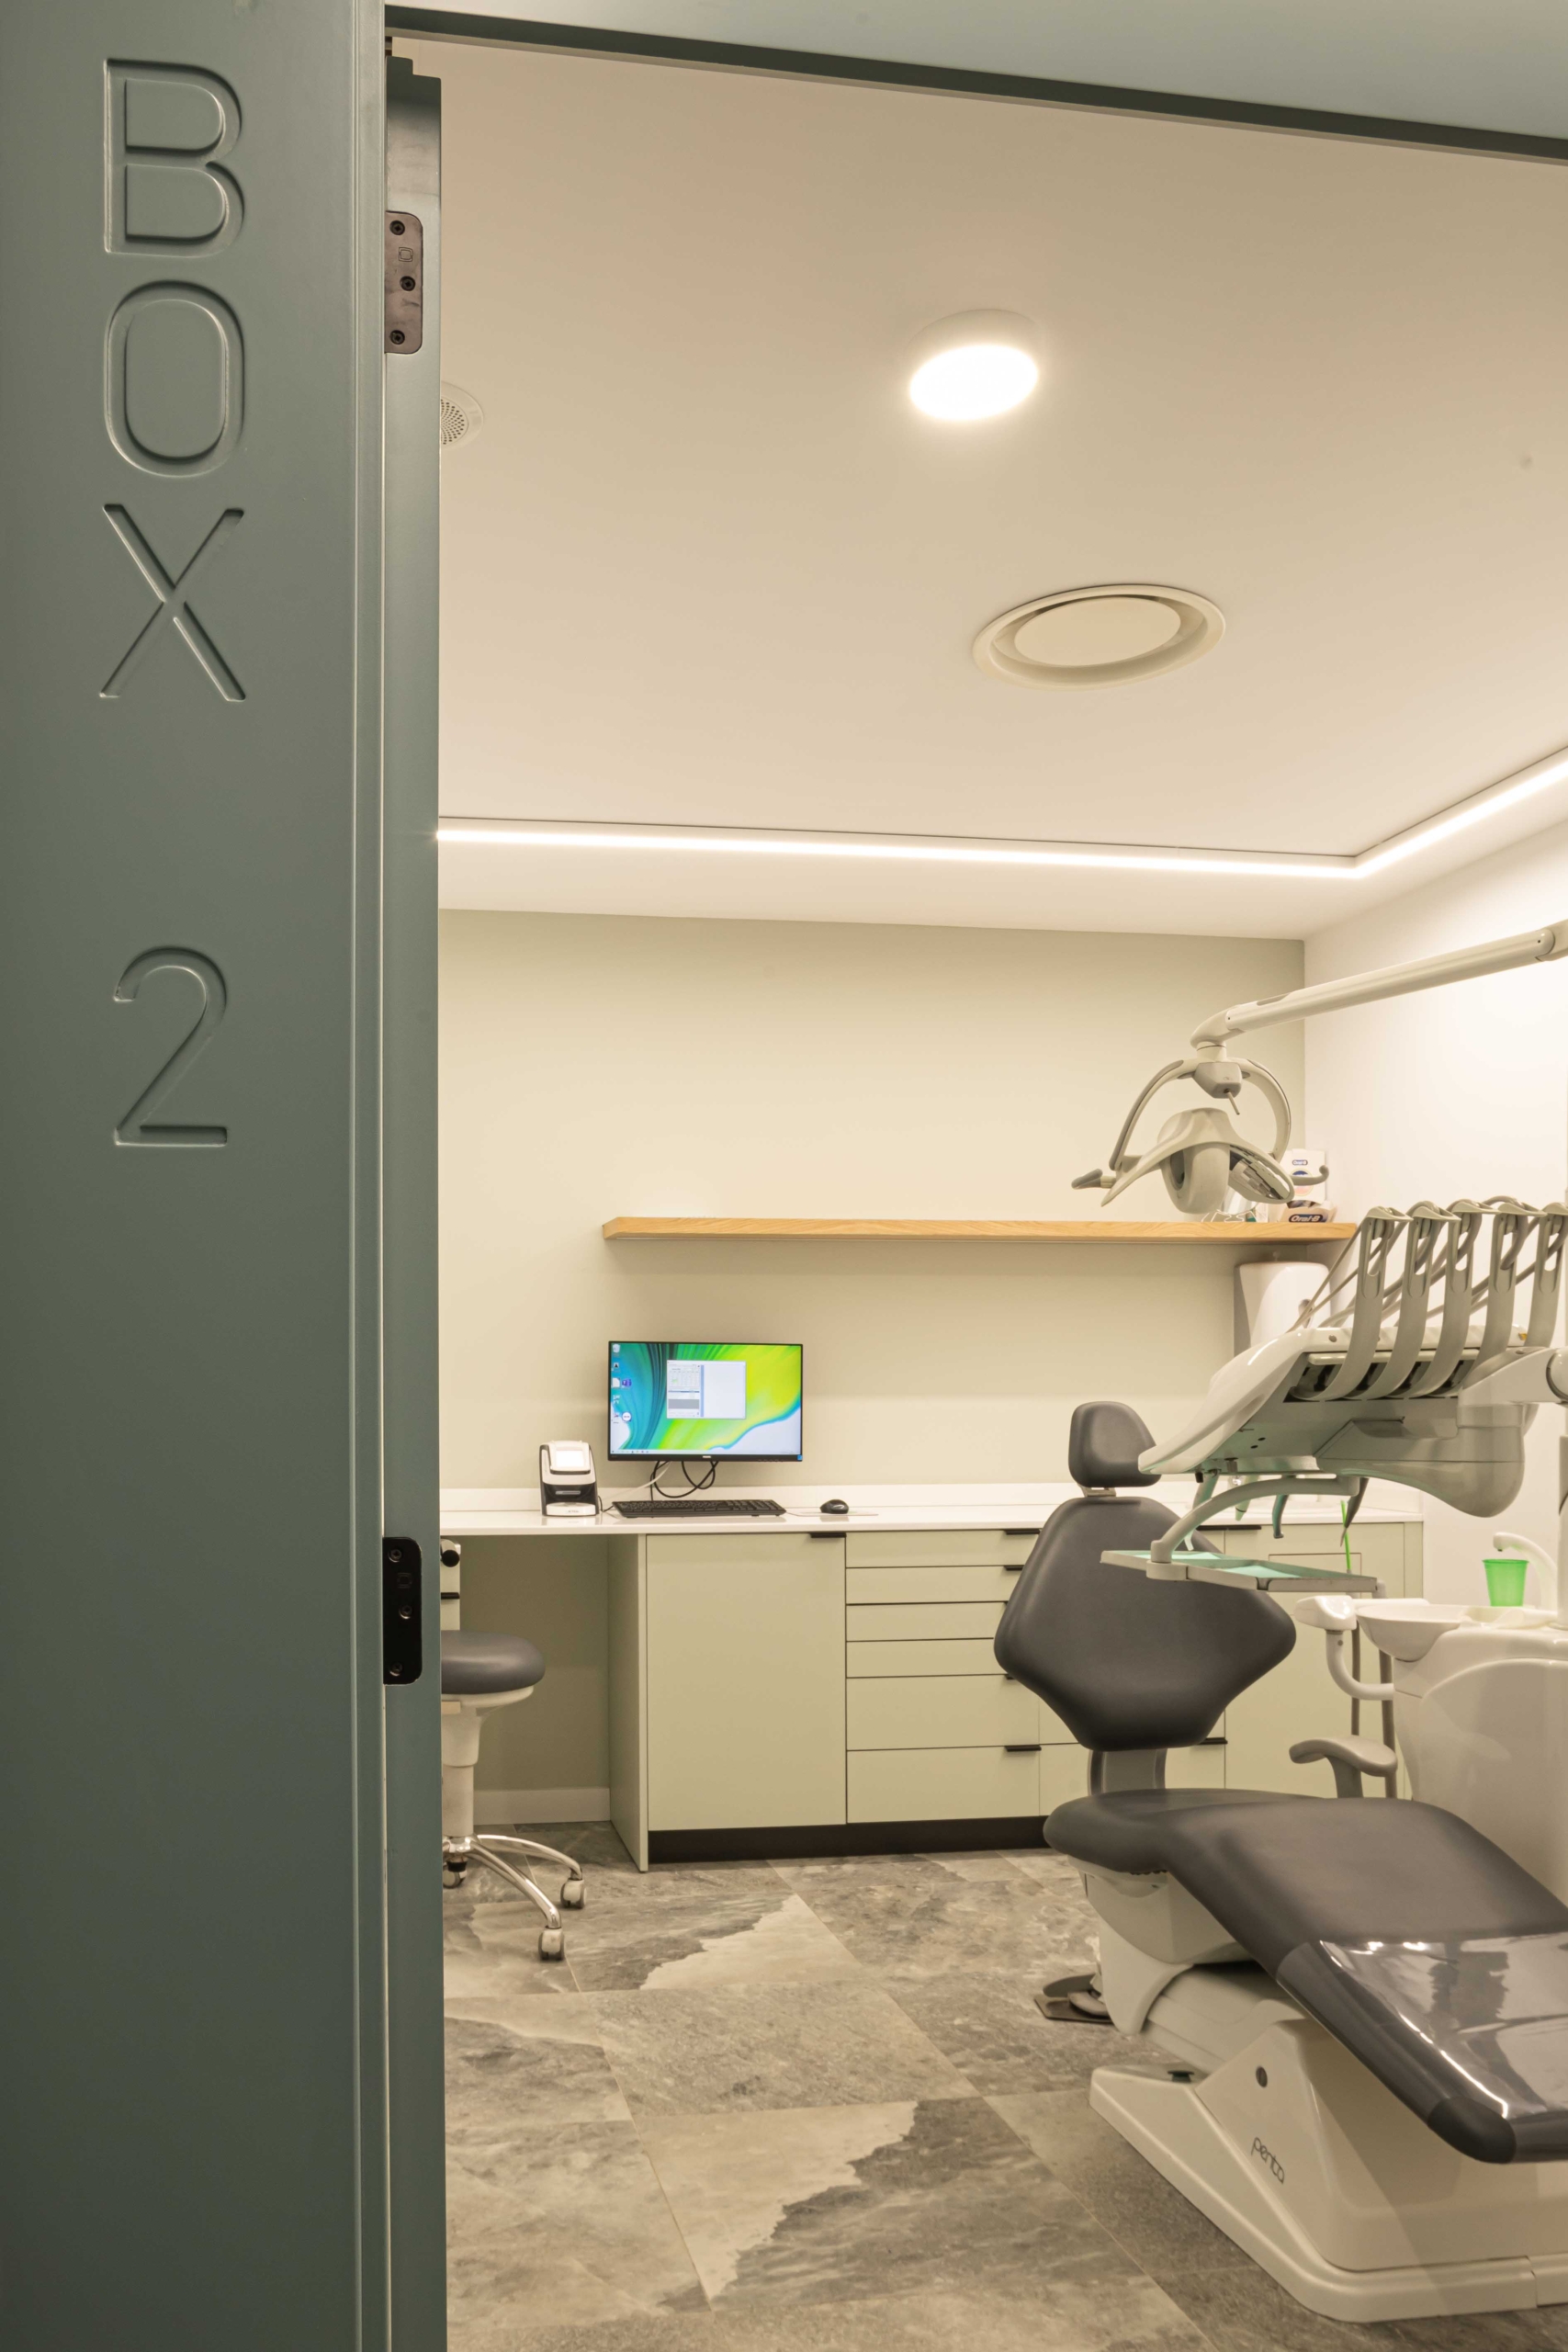 Puerta con nombre ¨Box 2¨con mobiliario protesico y silla oncolagica en acabado en gris, con ordenador